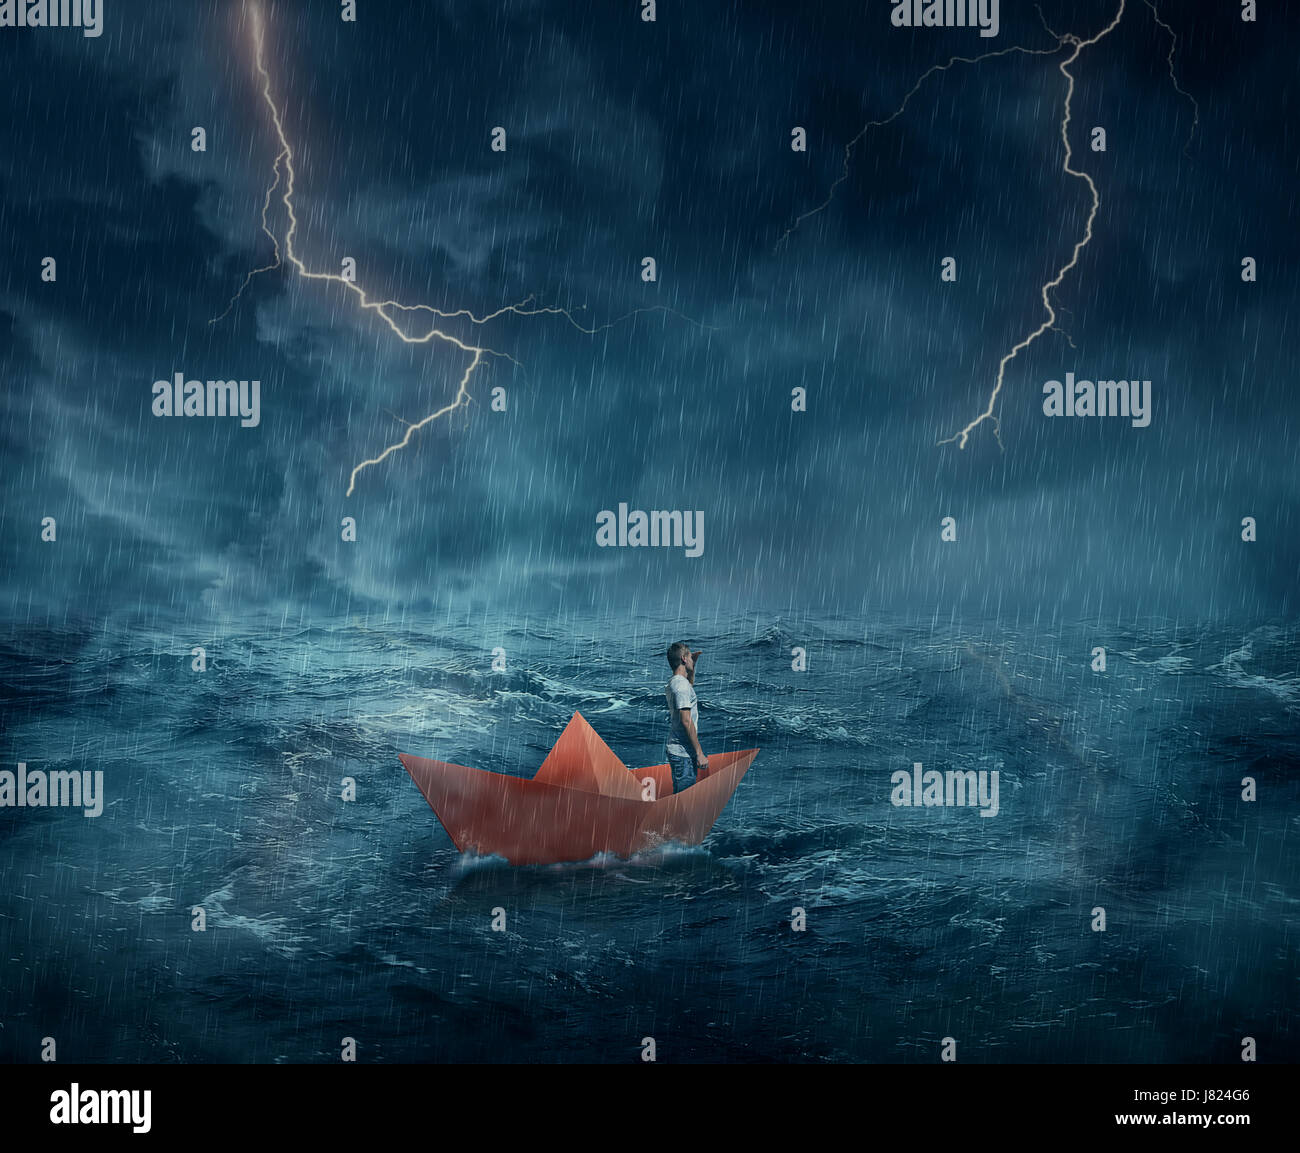 Jeune garçon dans un papier orange bateau perdu dans l'océan, dans une nuit de tempête avec des éclairs dans le ciel. Voyage et aventure concept. Banque D'Images